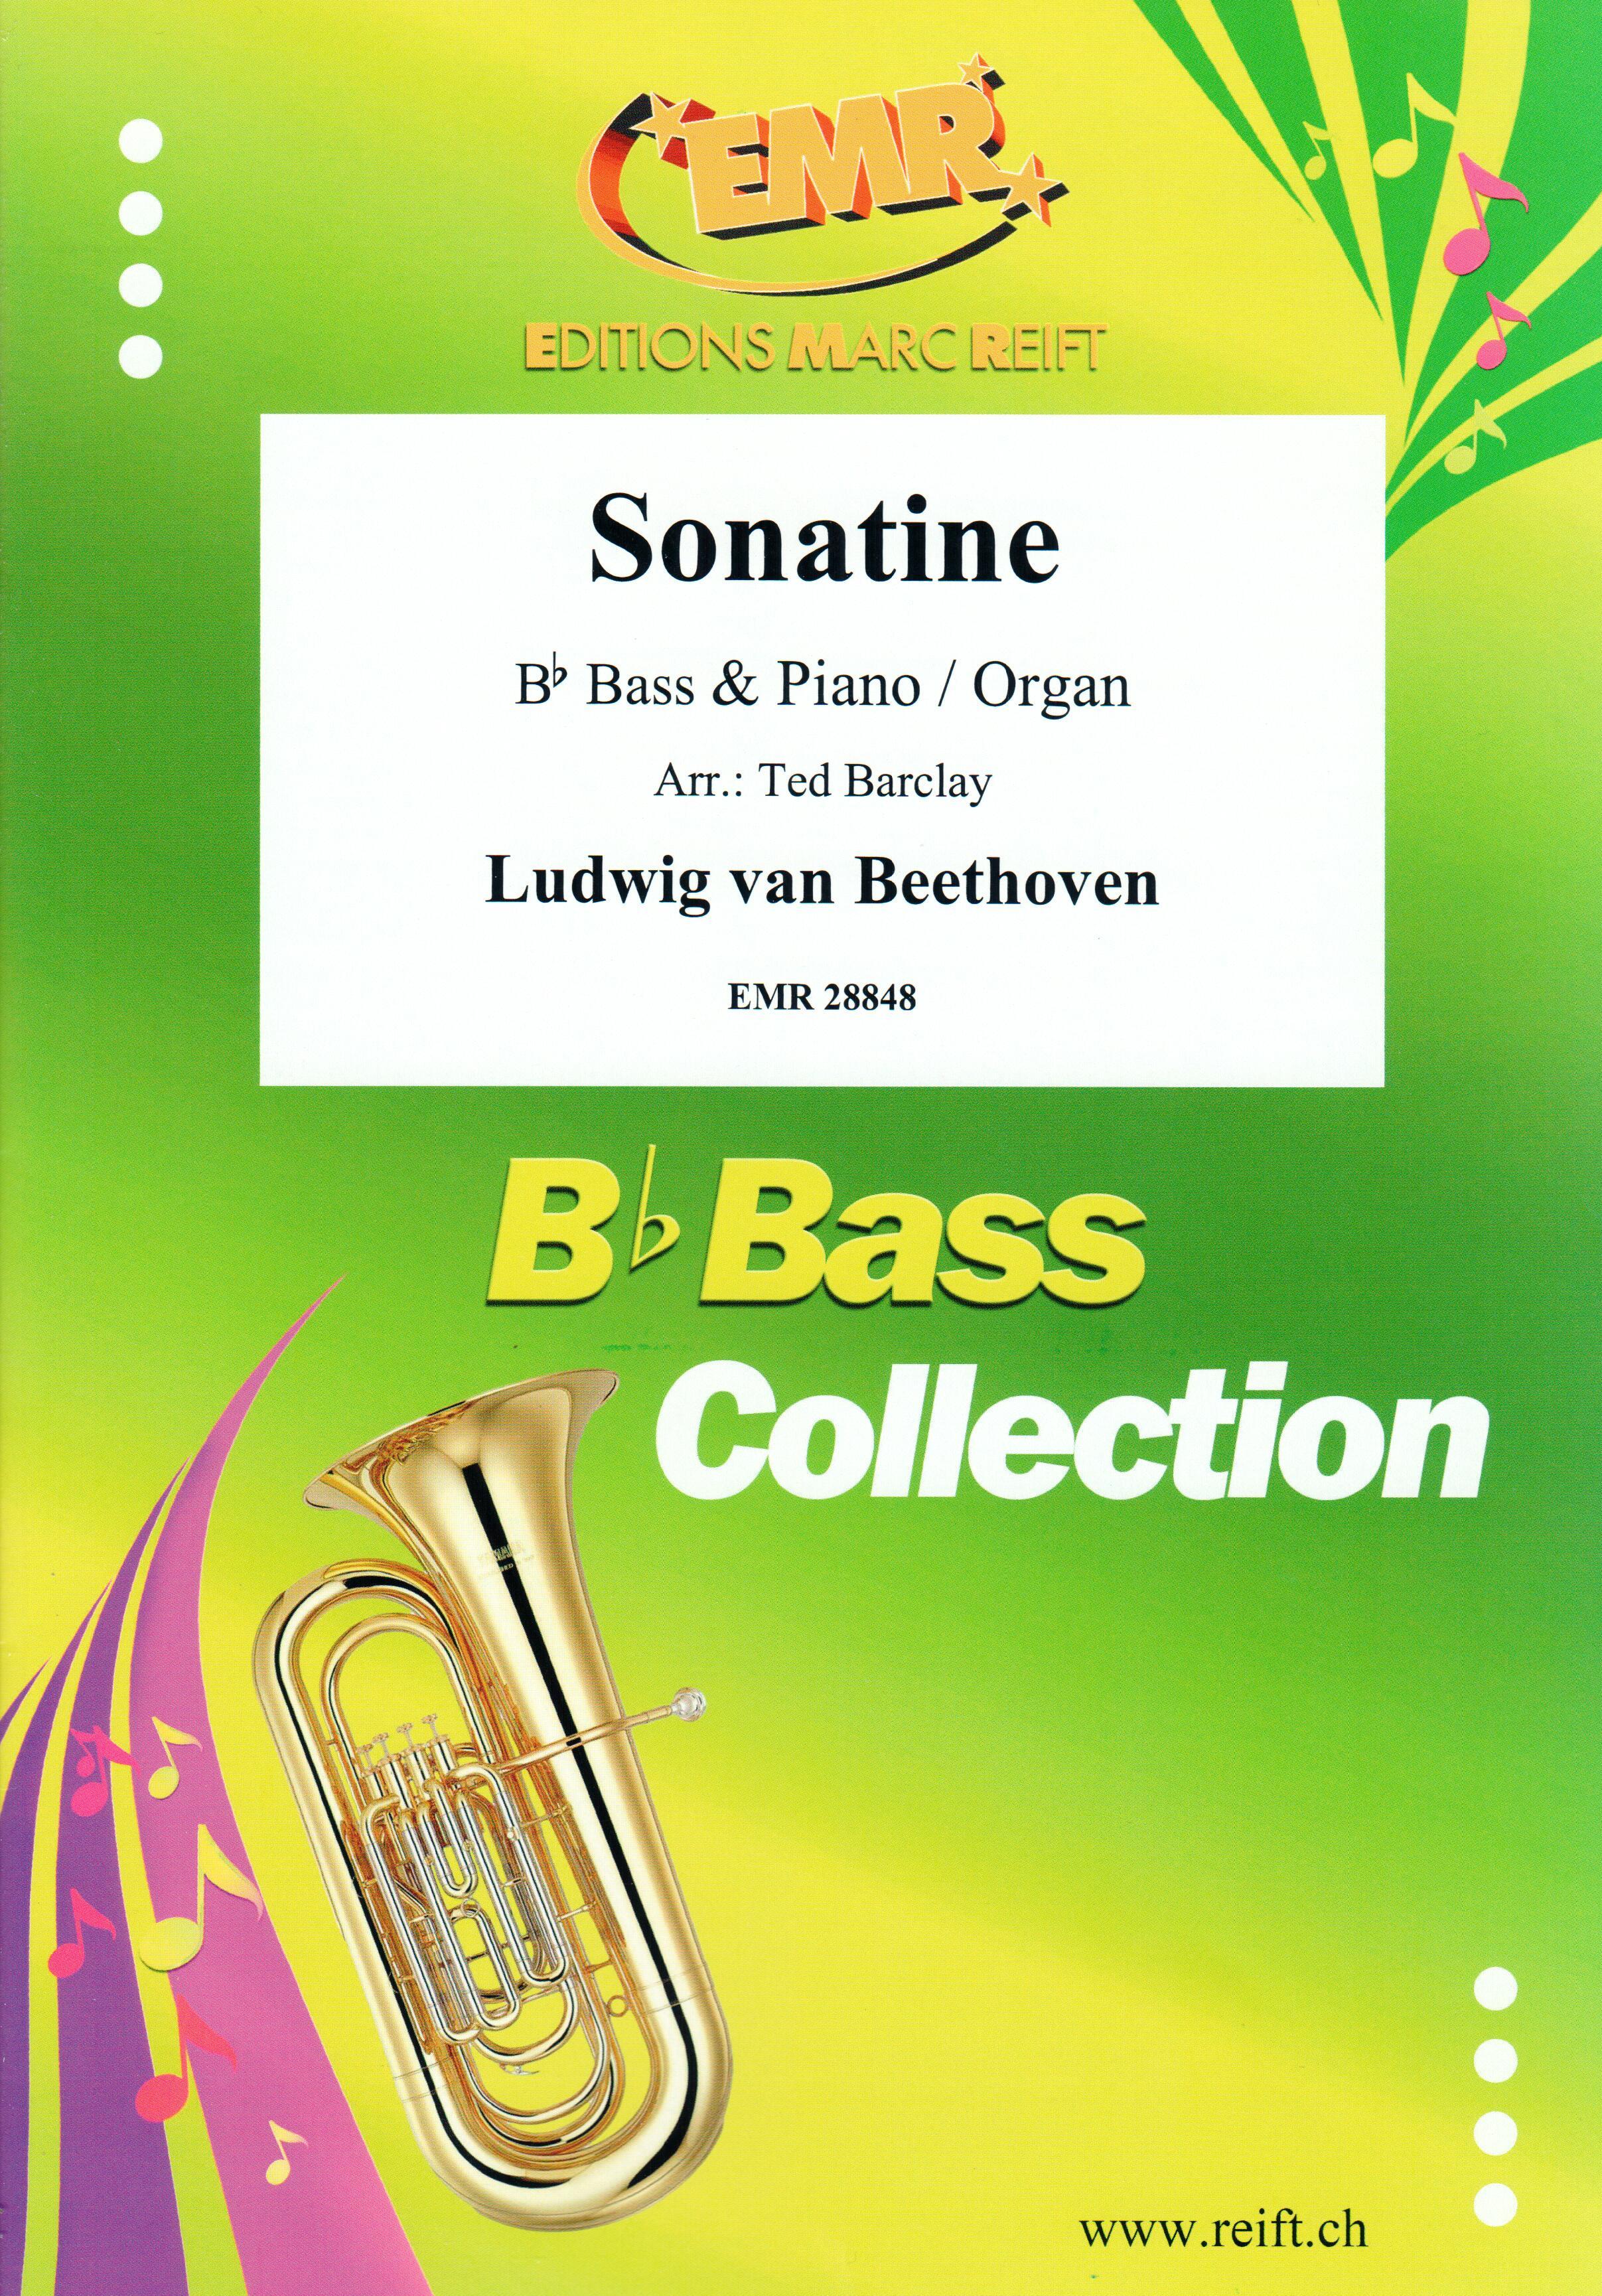 SONATINE, SOLOS - E♭. Bass